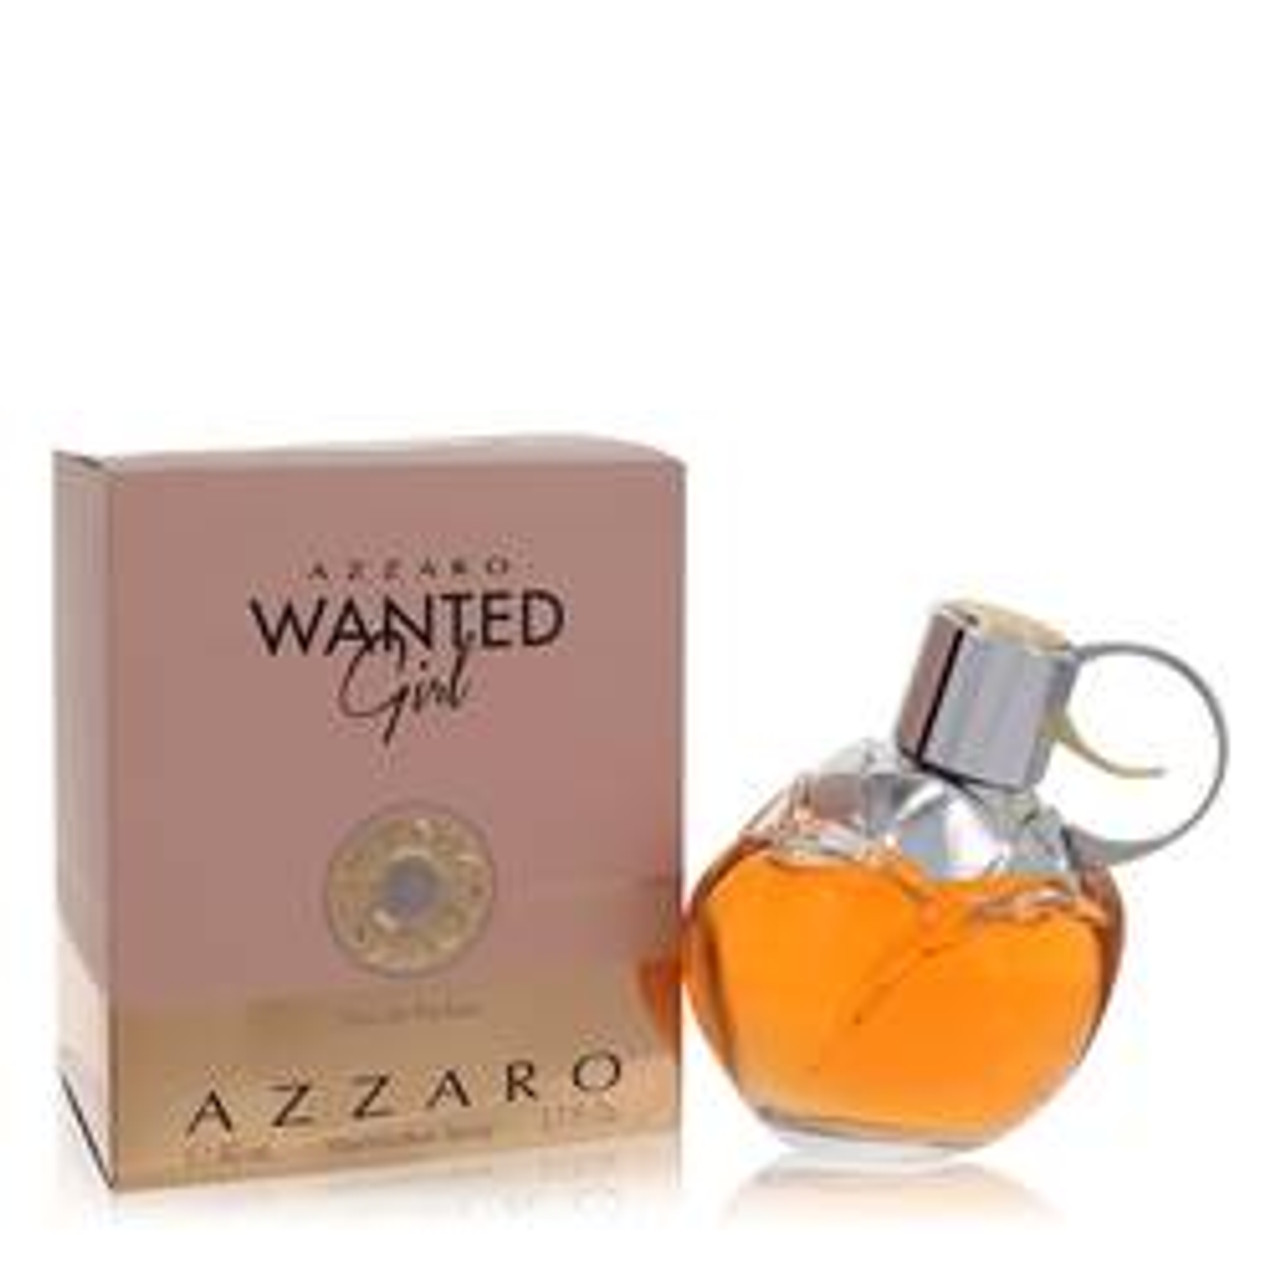 Azzaro Wanted Girl Perfume By Azzaro Eau De Parfum Spray 2.7 oz for Women - *Pre-Order